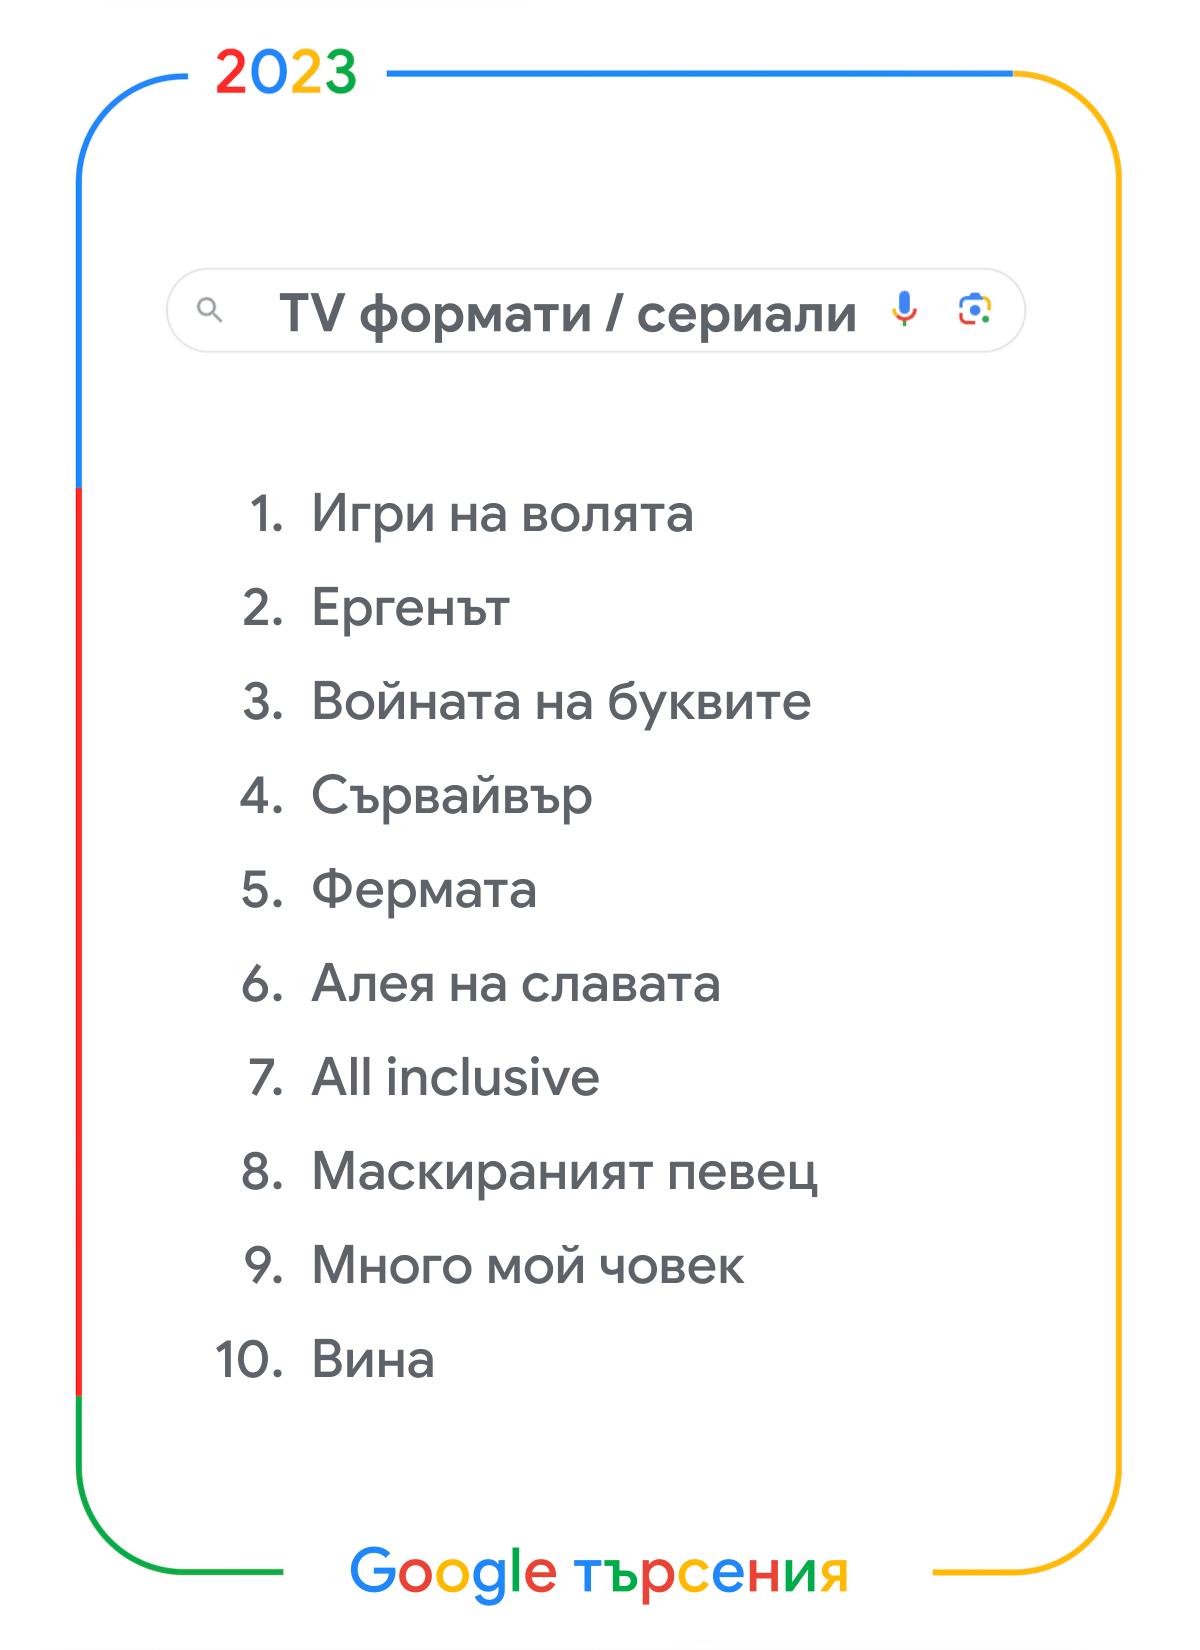 <p>Google публикува днес своя традиционен годишен списък с най-търсените думи, който предоставя уникален поглед върху най-значимите тенденции в България през изминалата година.</p>